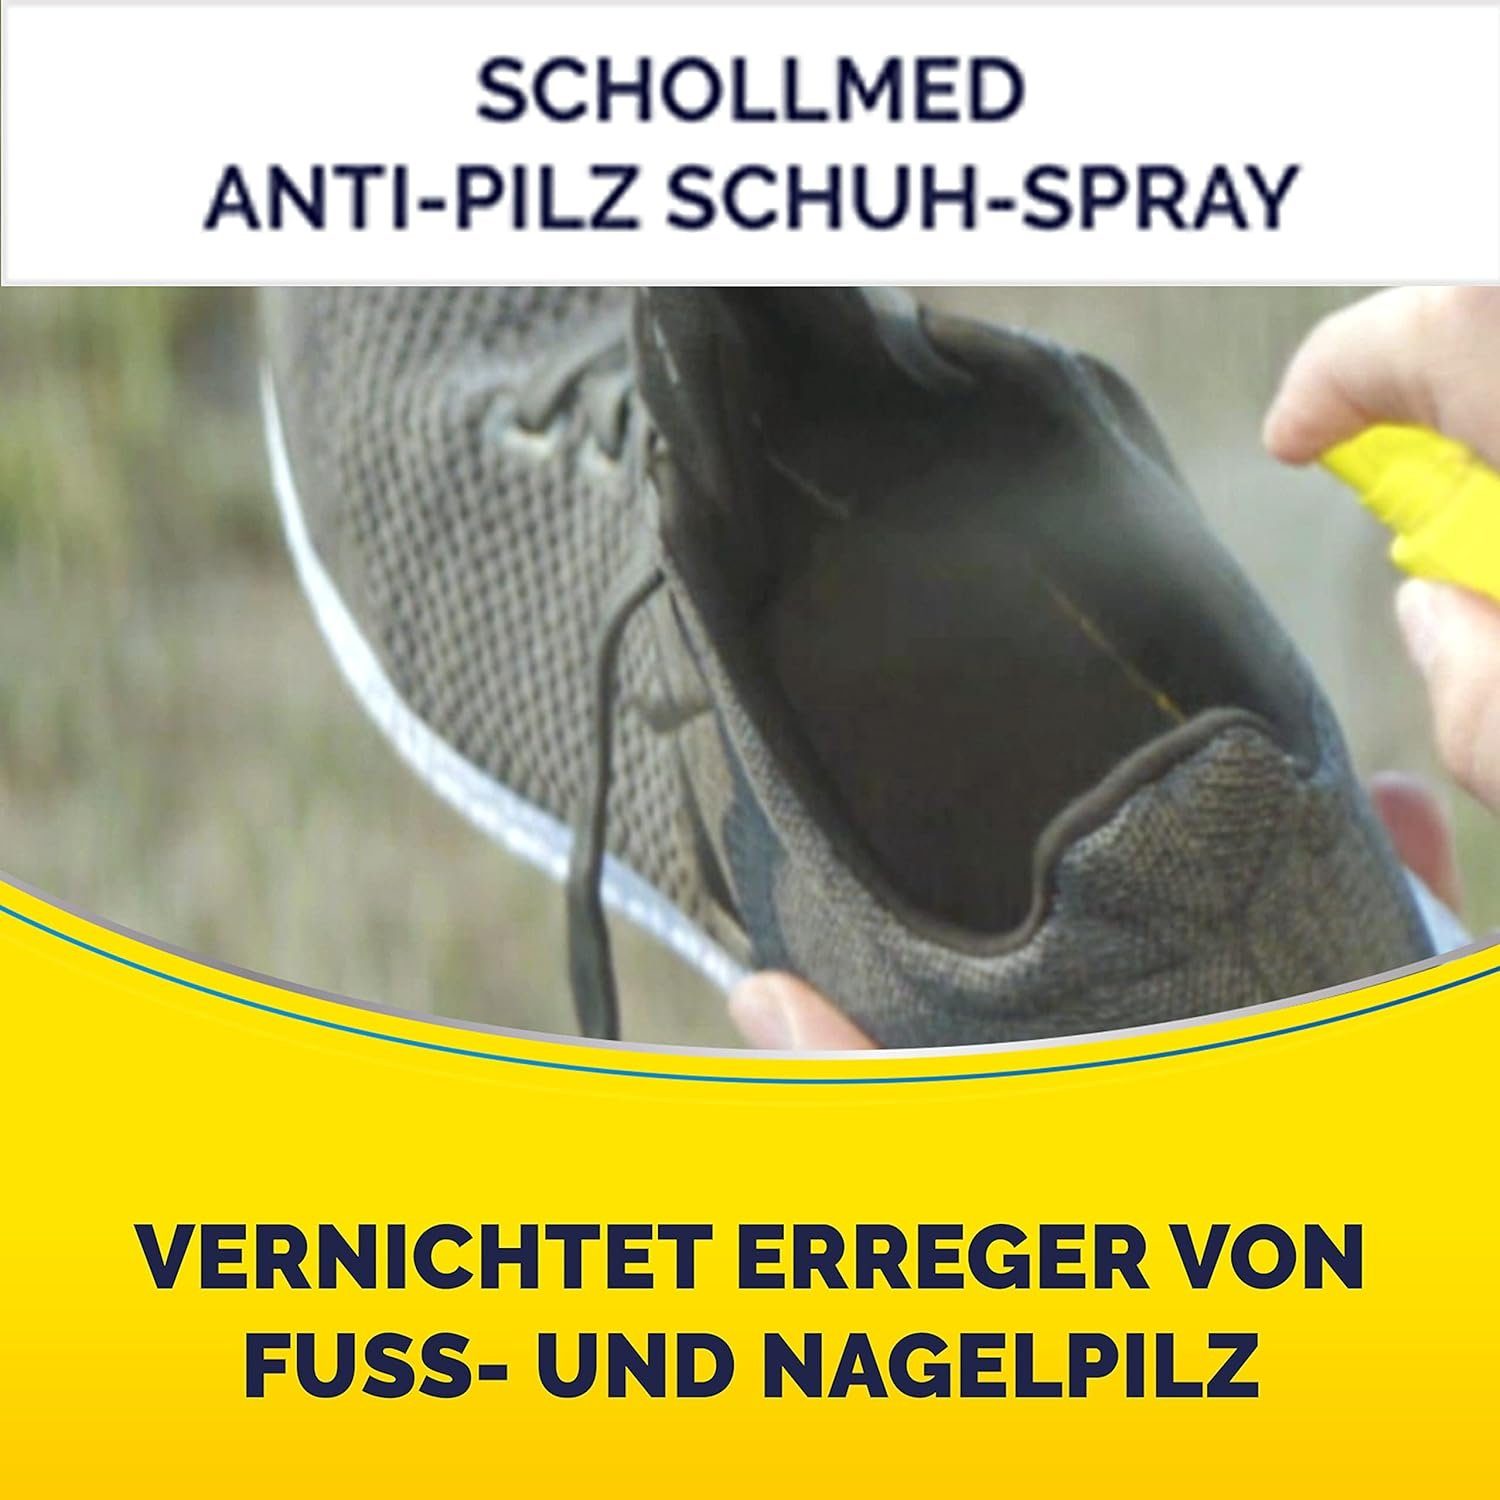 Scholl Fußpflegespray Langzeitwirkung Vernichtet mit Schutz getestet, Schuh-Spray 2x dermatologisch Erreger Pflege Anti-Pilz 250ml 2-tlg., Fußpflege Schuhdesinfektionsspray